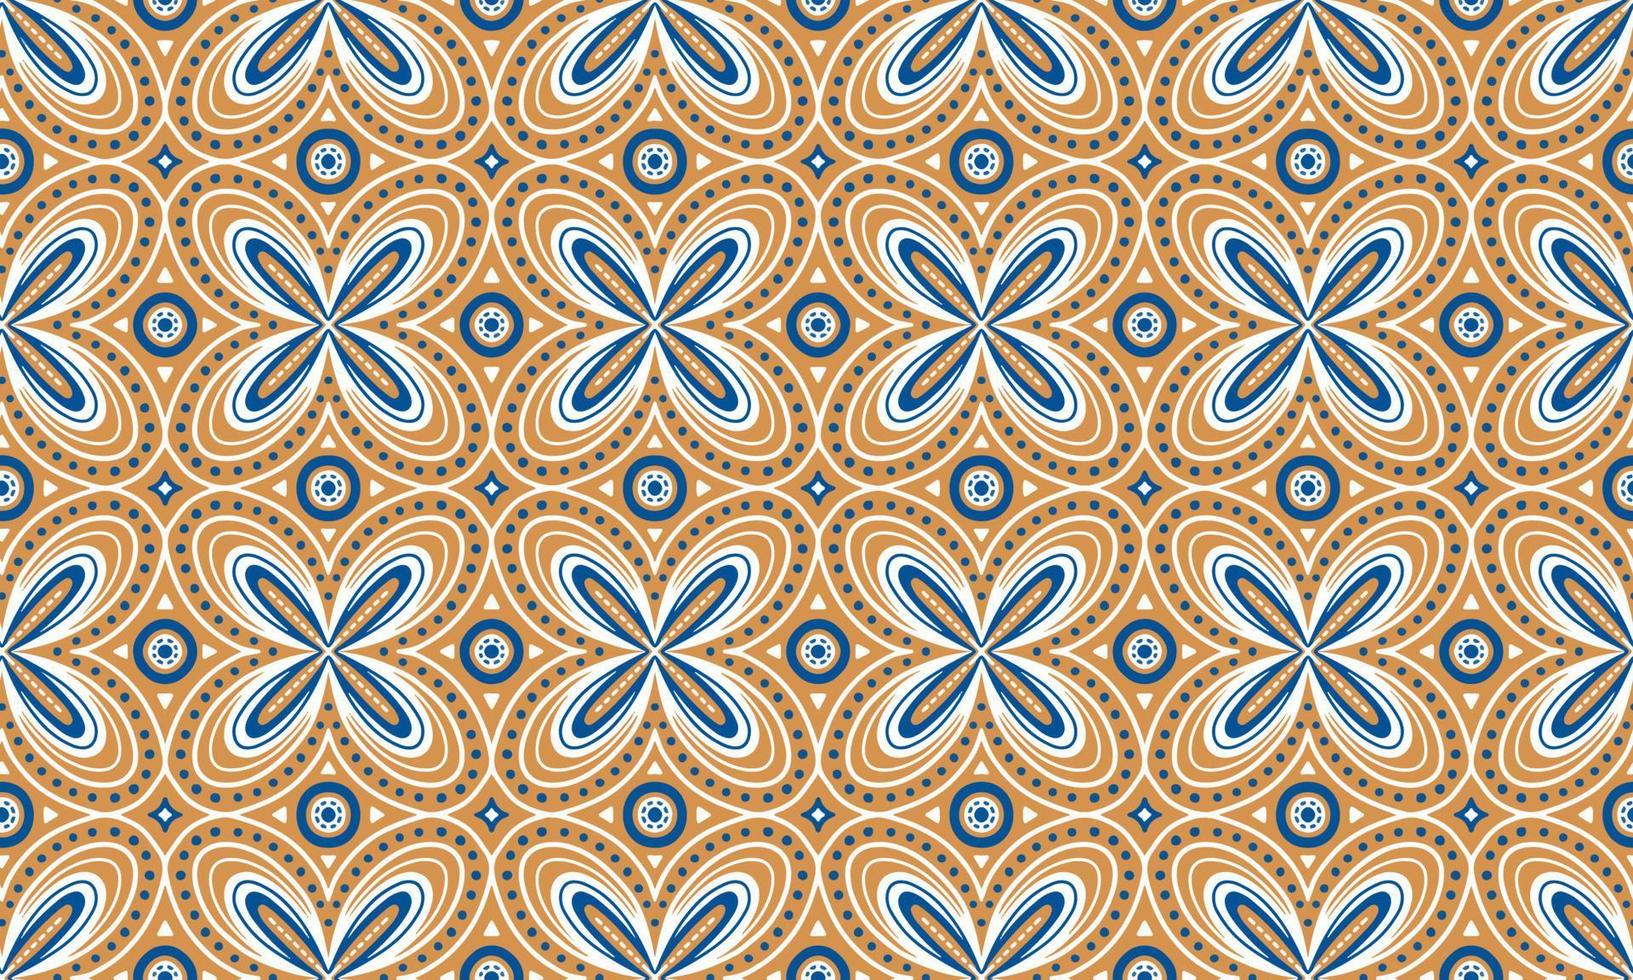 etnico astratto sfondo carino blu giallo geometrico tribale ikat popolare motivo Arabo orientale nativo modello tradizionale disegno,tappeto,carta da parati,abbigliamento,tessuto,avvolgimento,stampa,batik,folk,maglia,vettore vettore